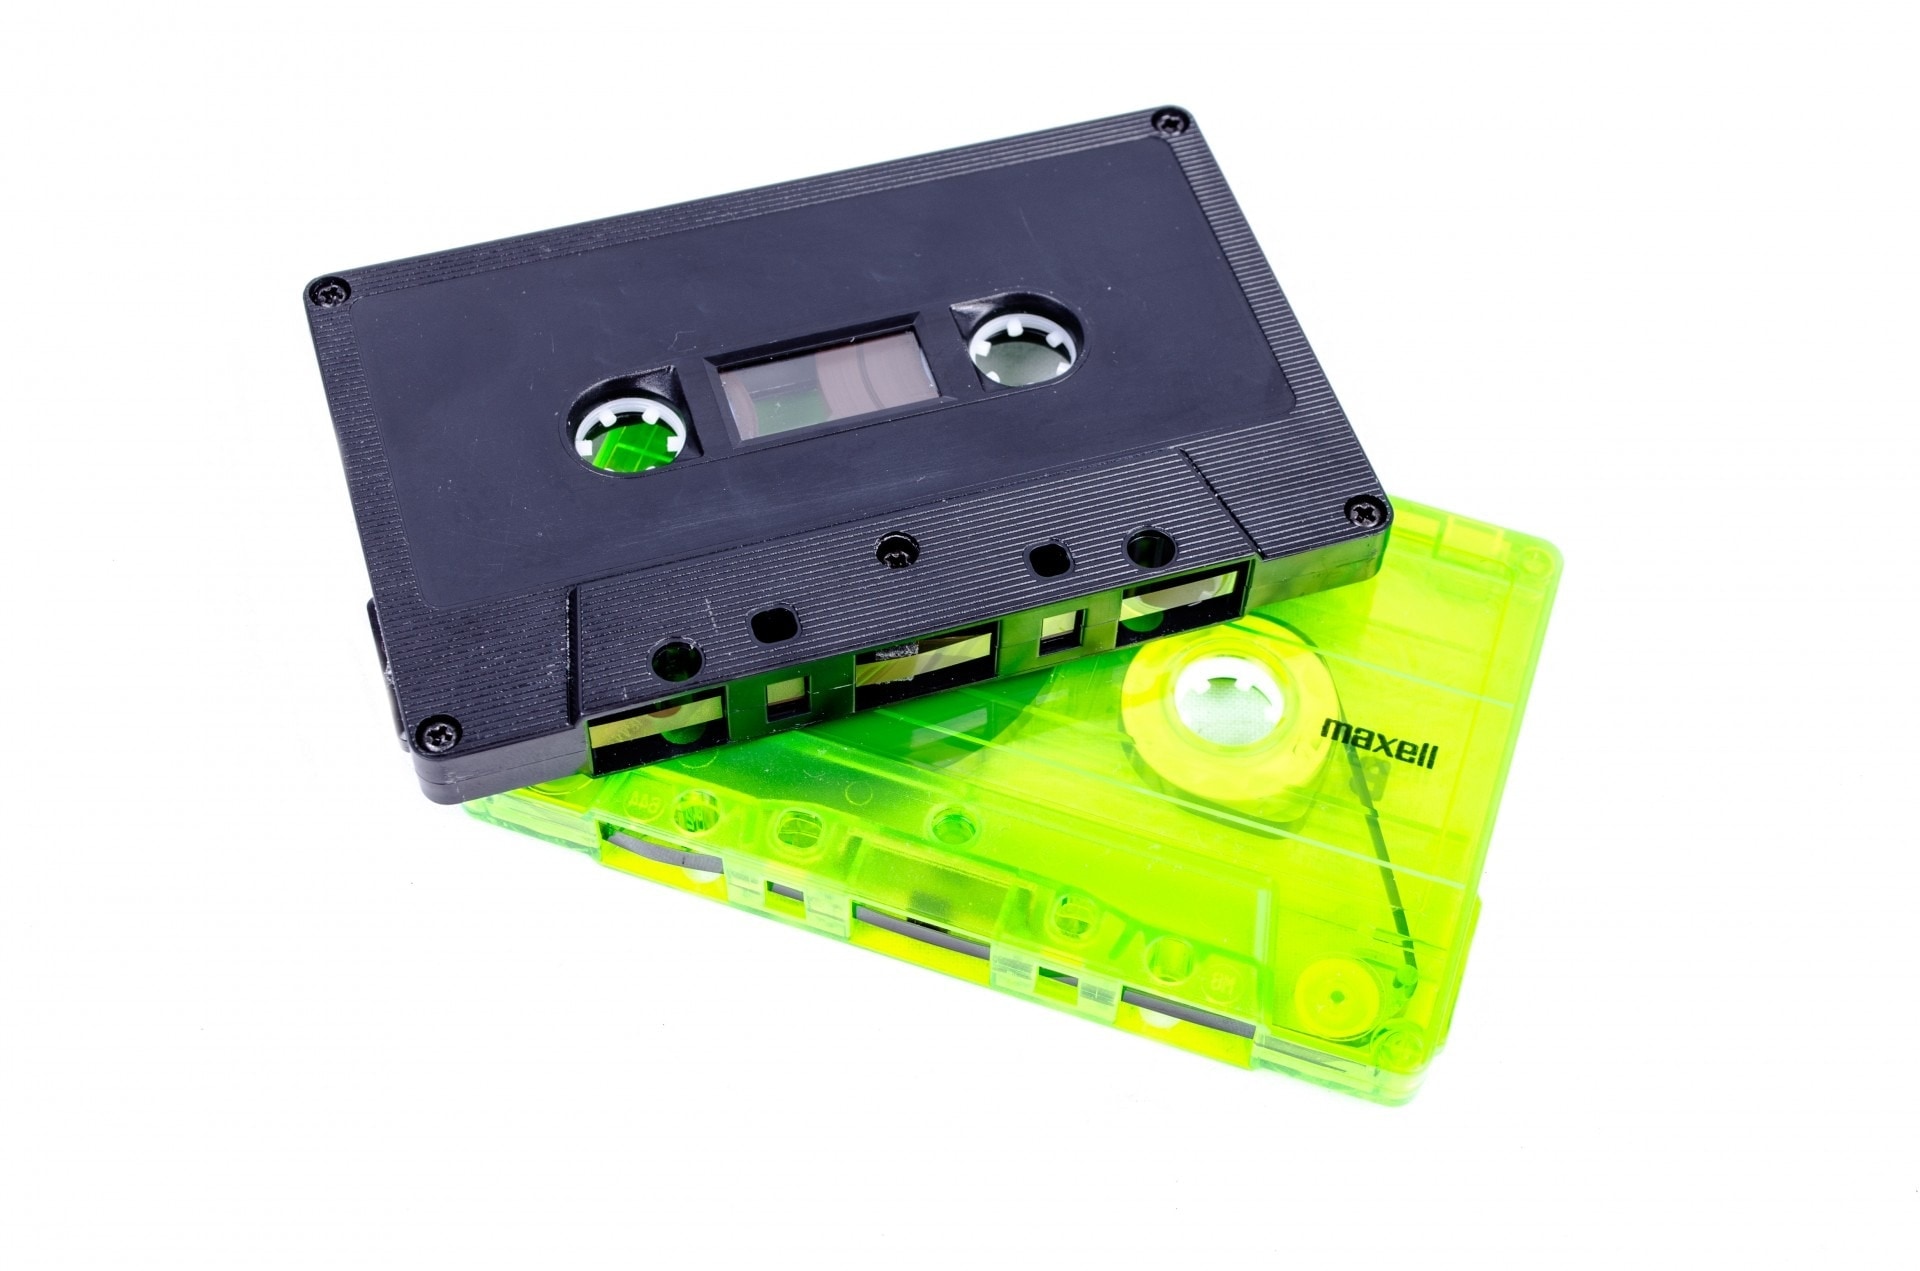 2 cassettes